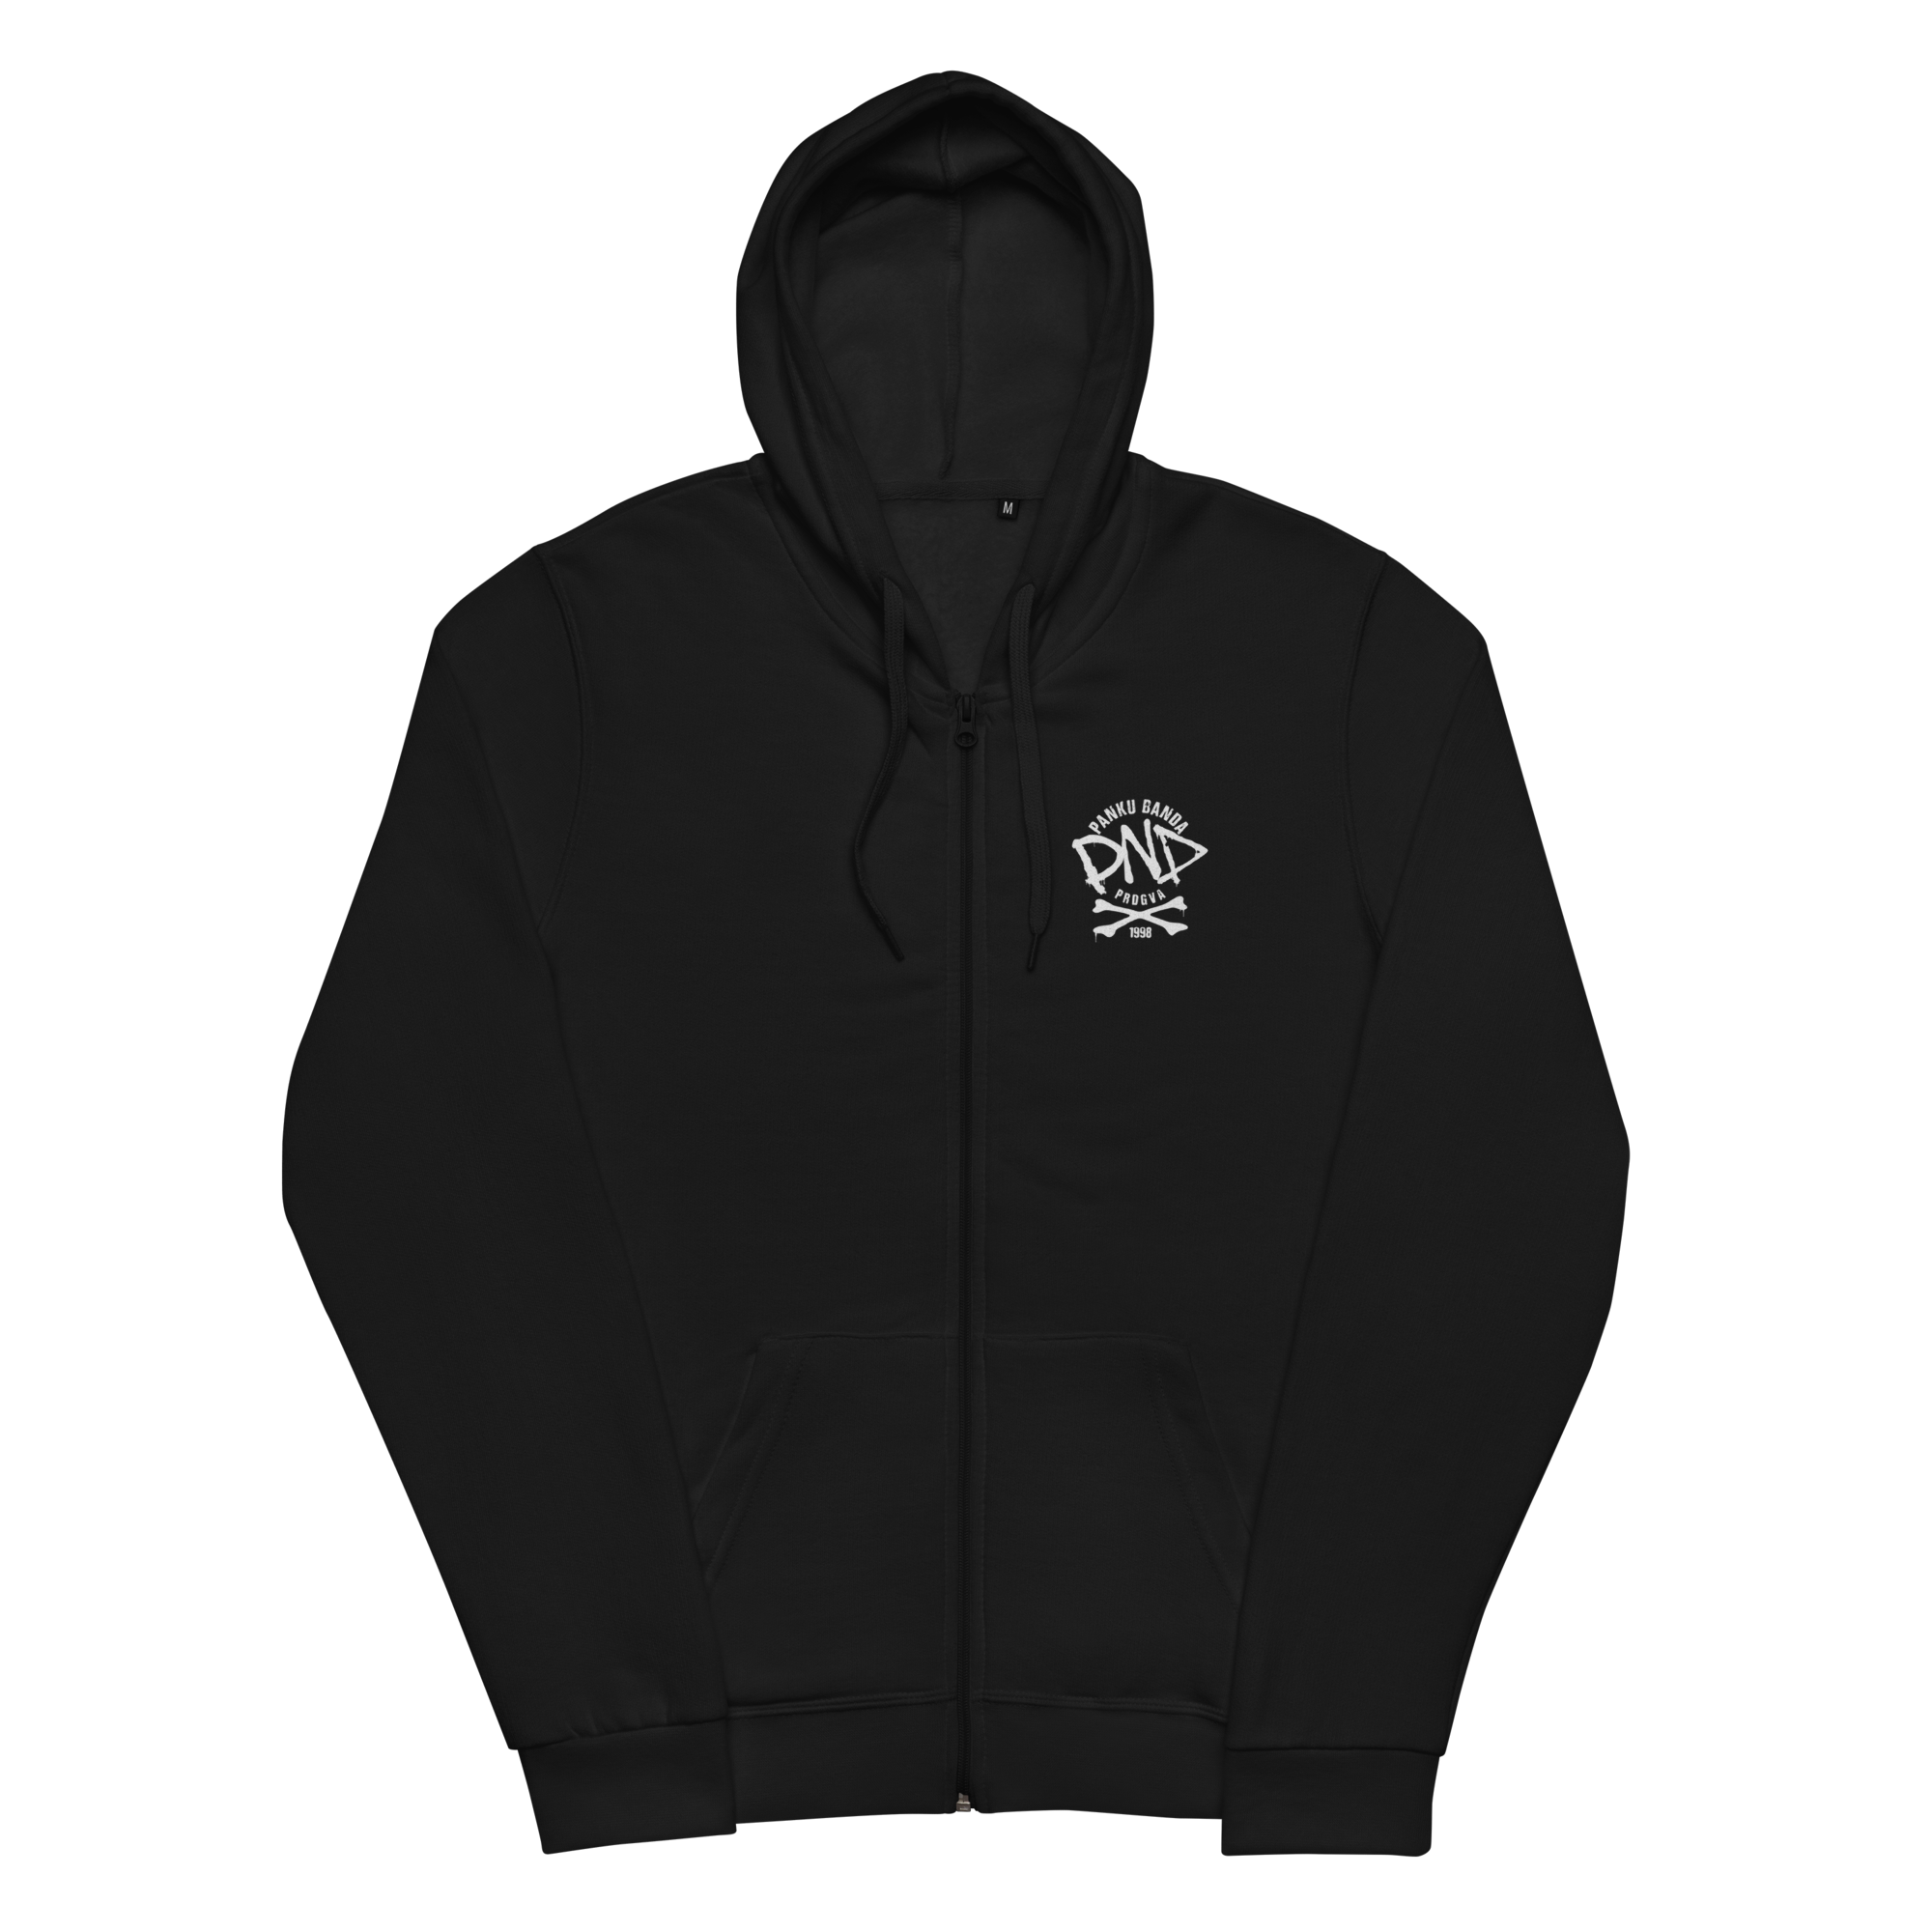 unisex-basic-zip-hoodie-black-front-6410c24b5de5e.png